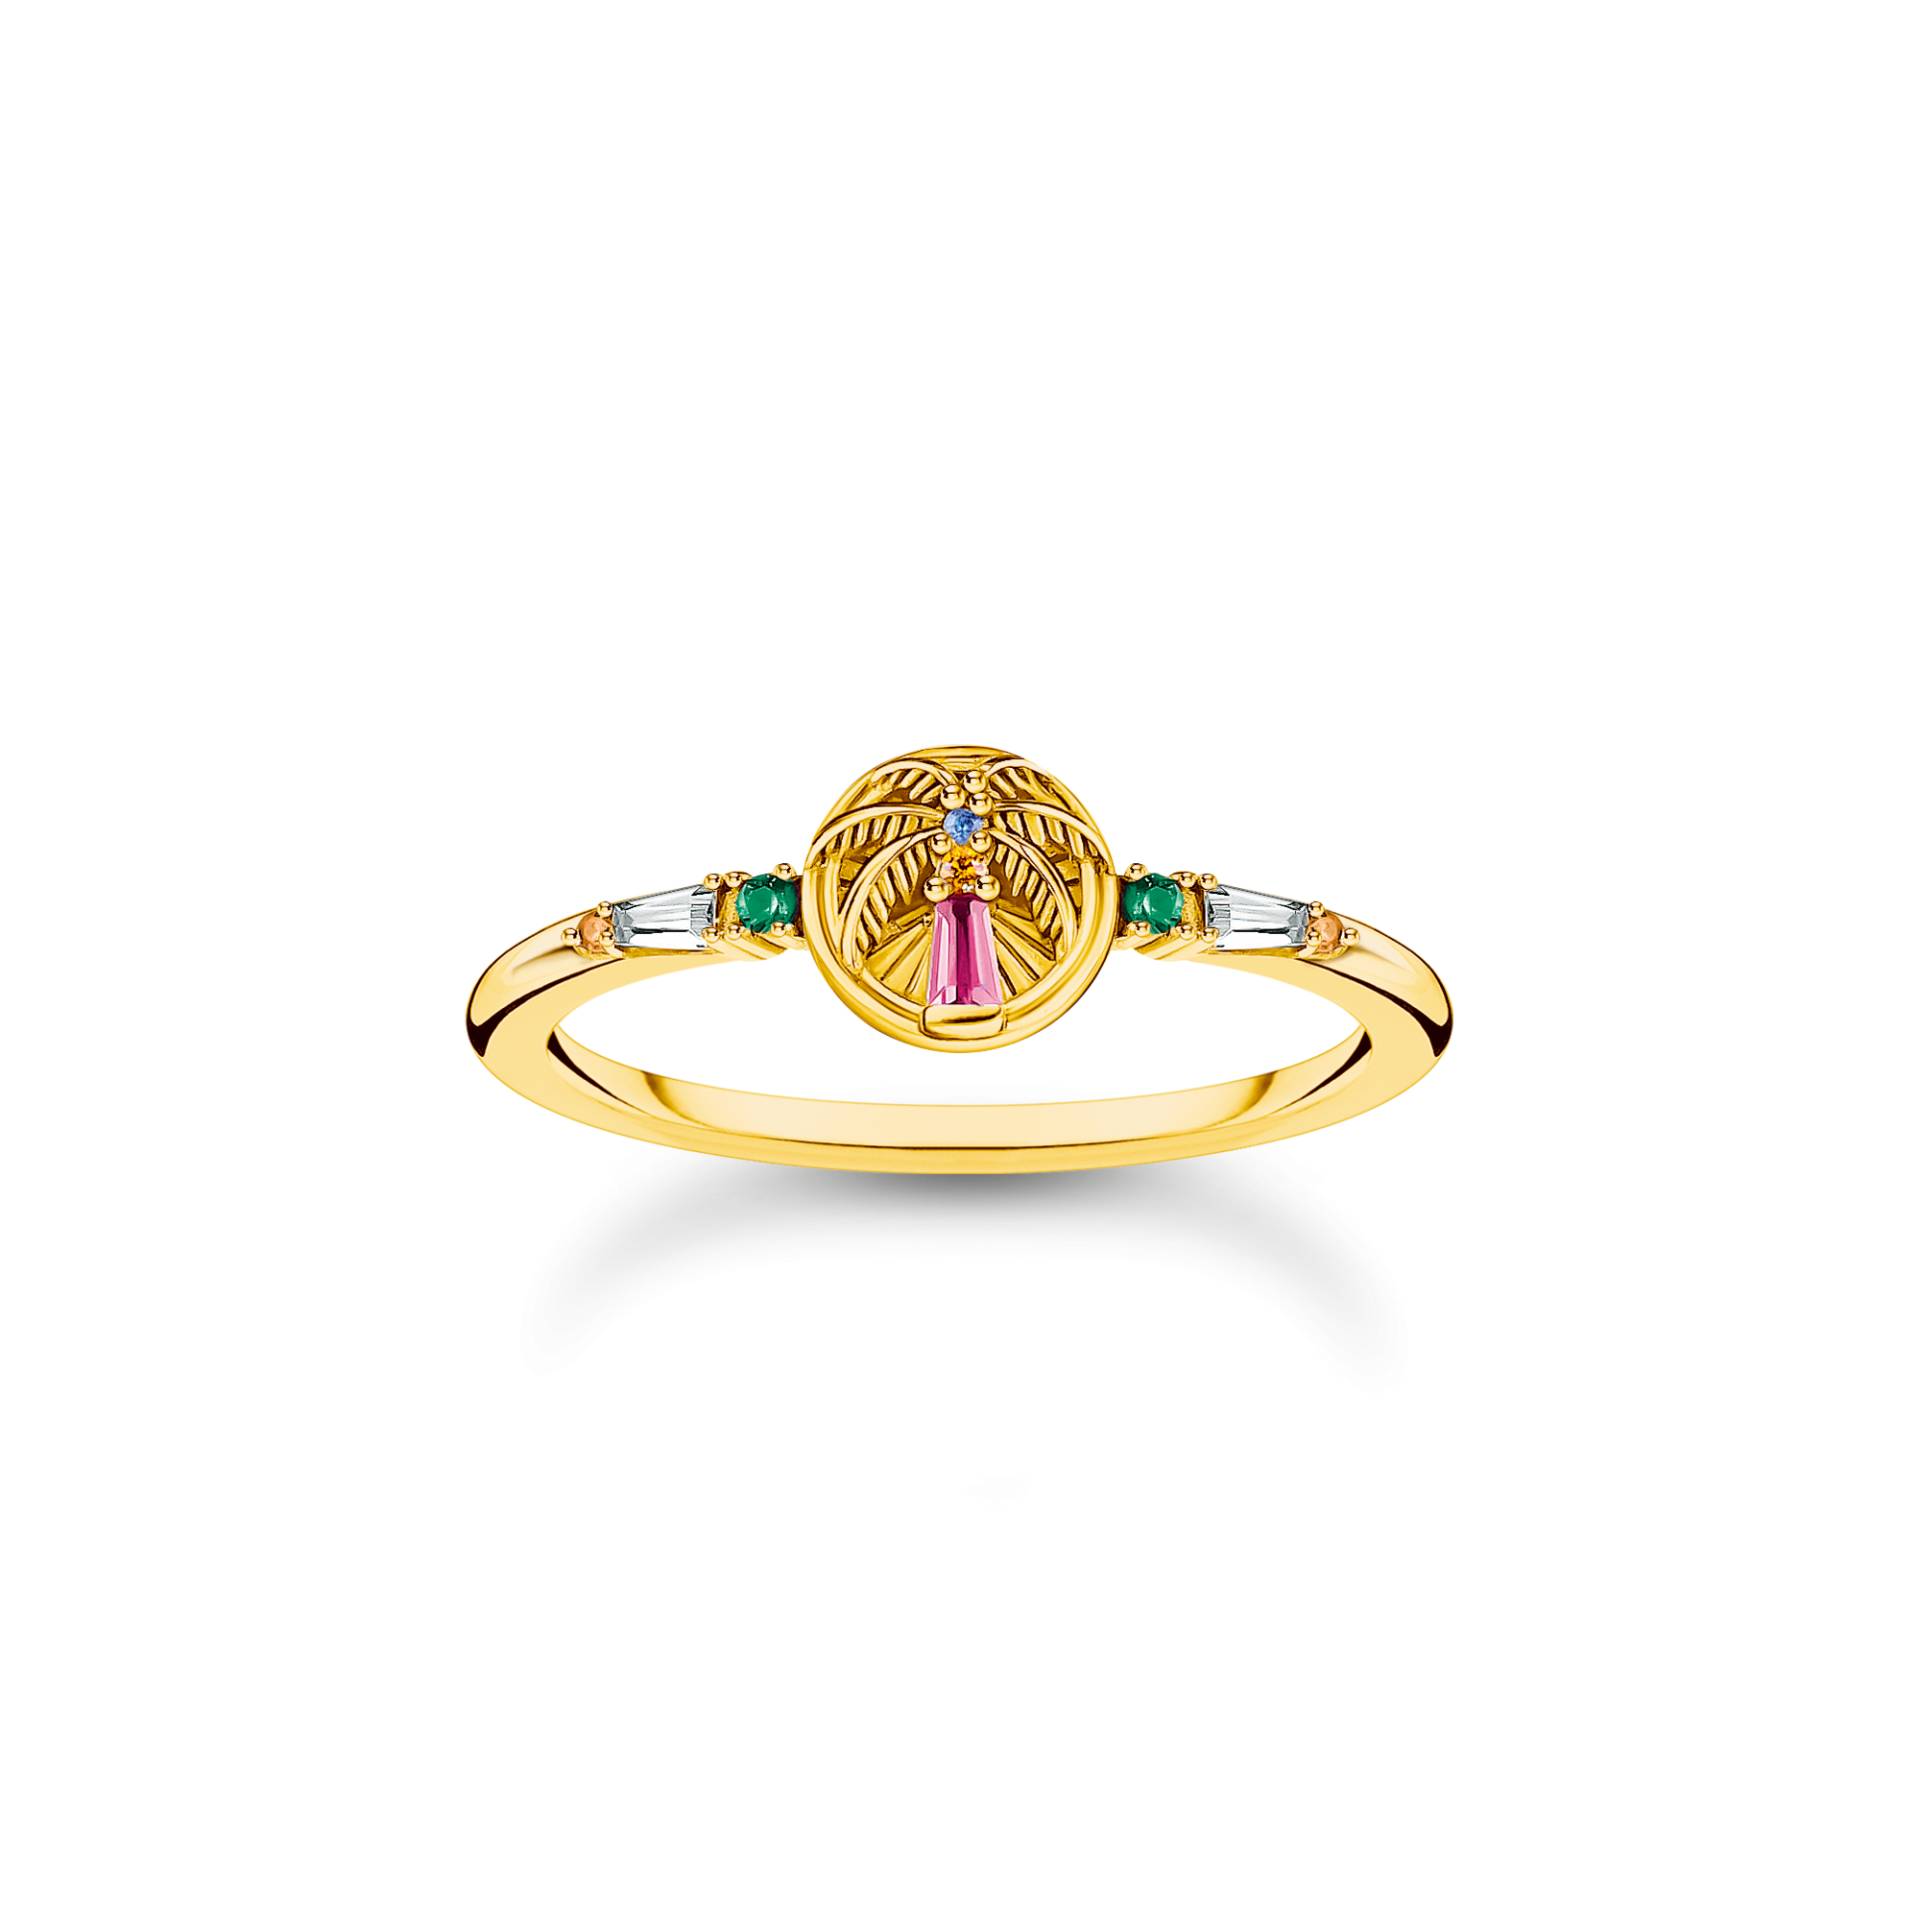 Thomas Sabo Ring mit Palme und bunten Steinen vergoldet mehrfarbig TR2457-488-7-56 von Thomas Sabo